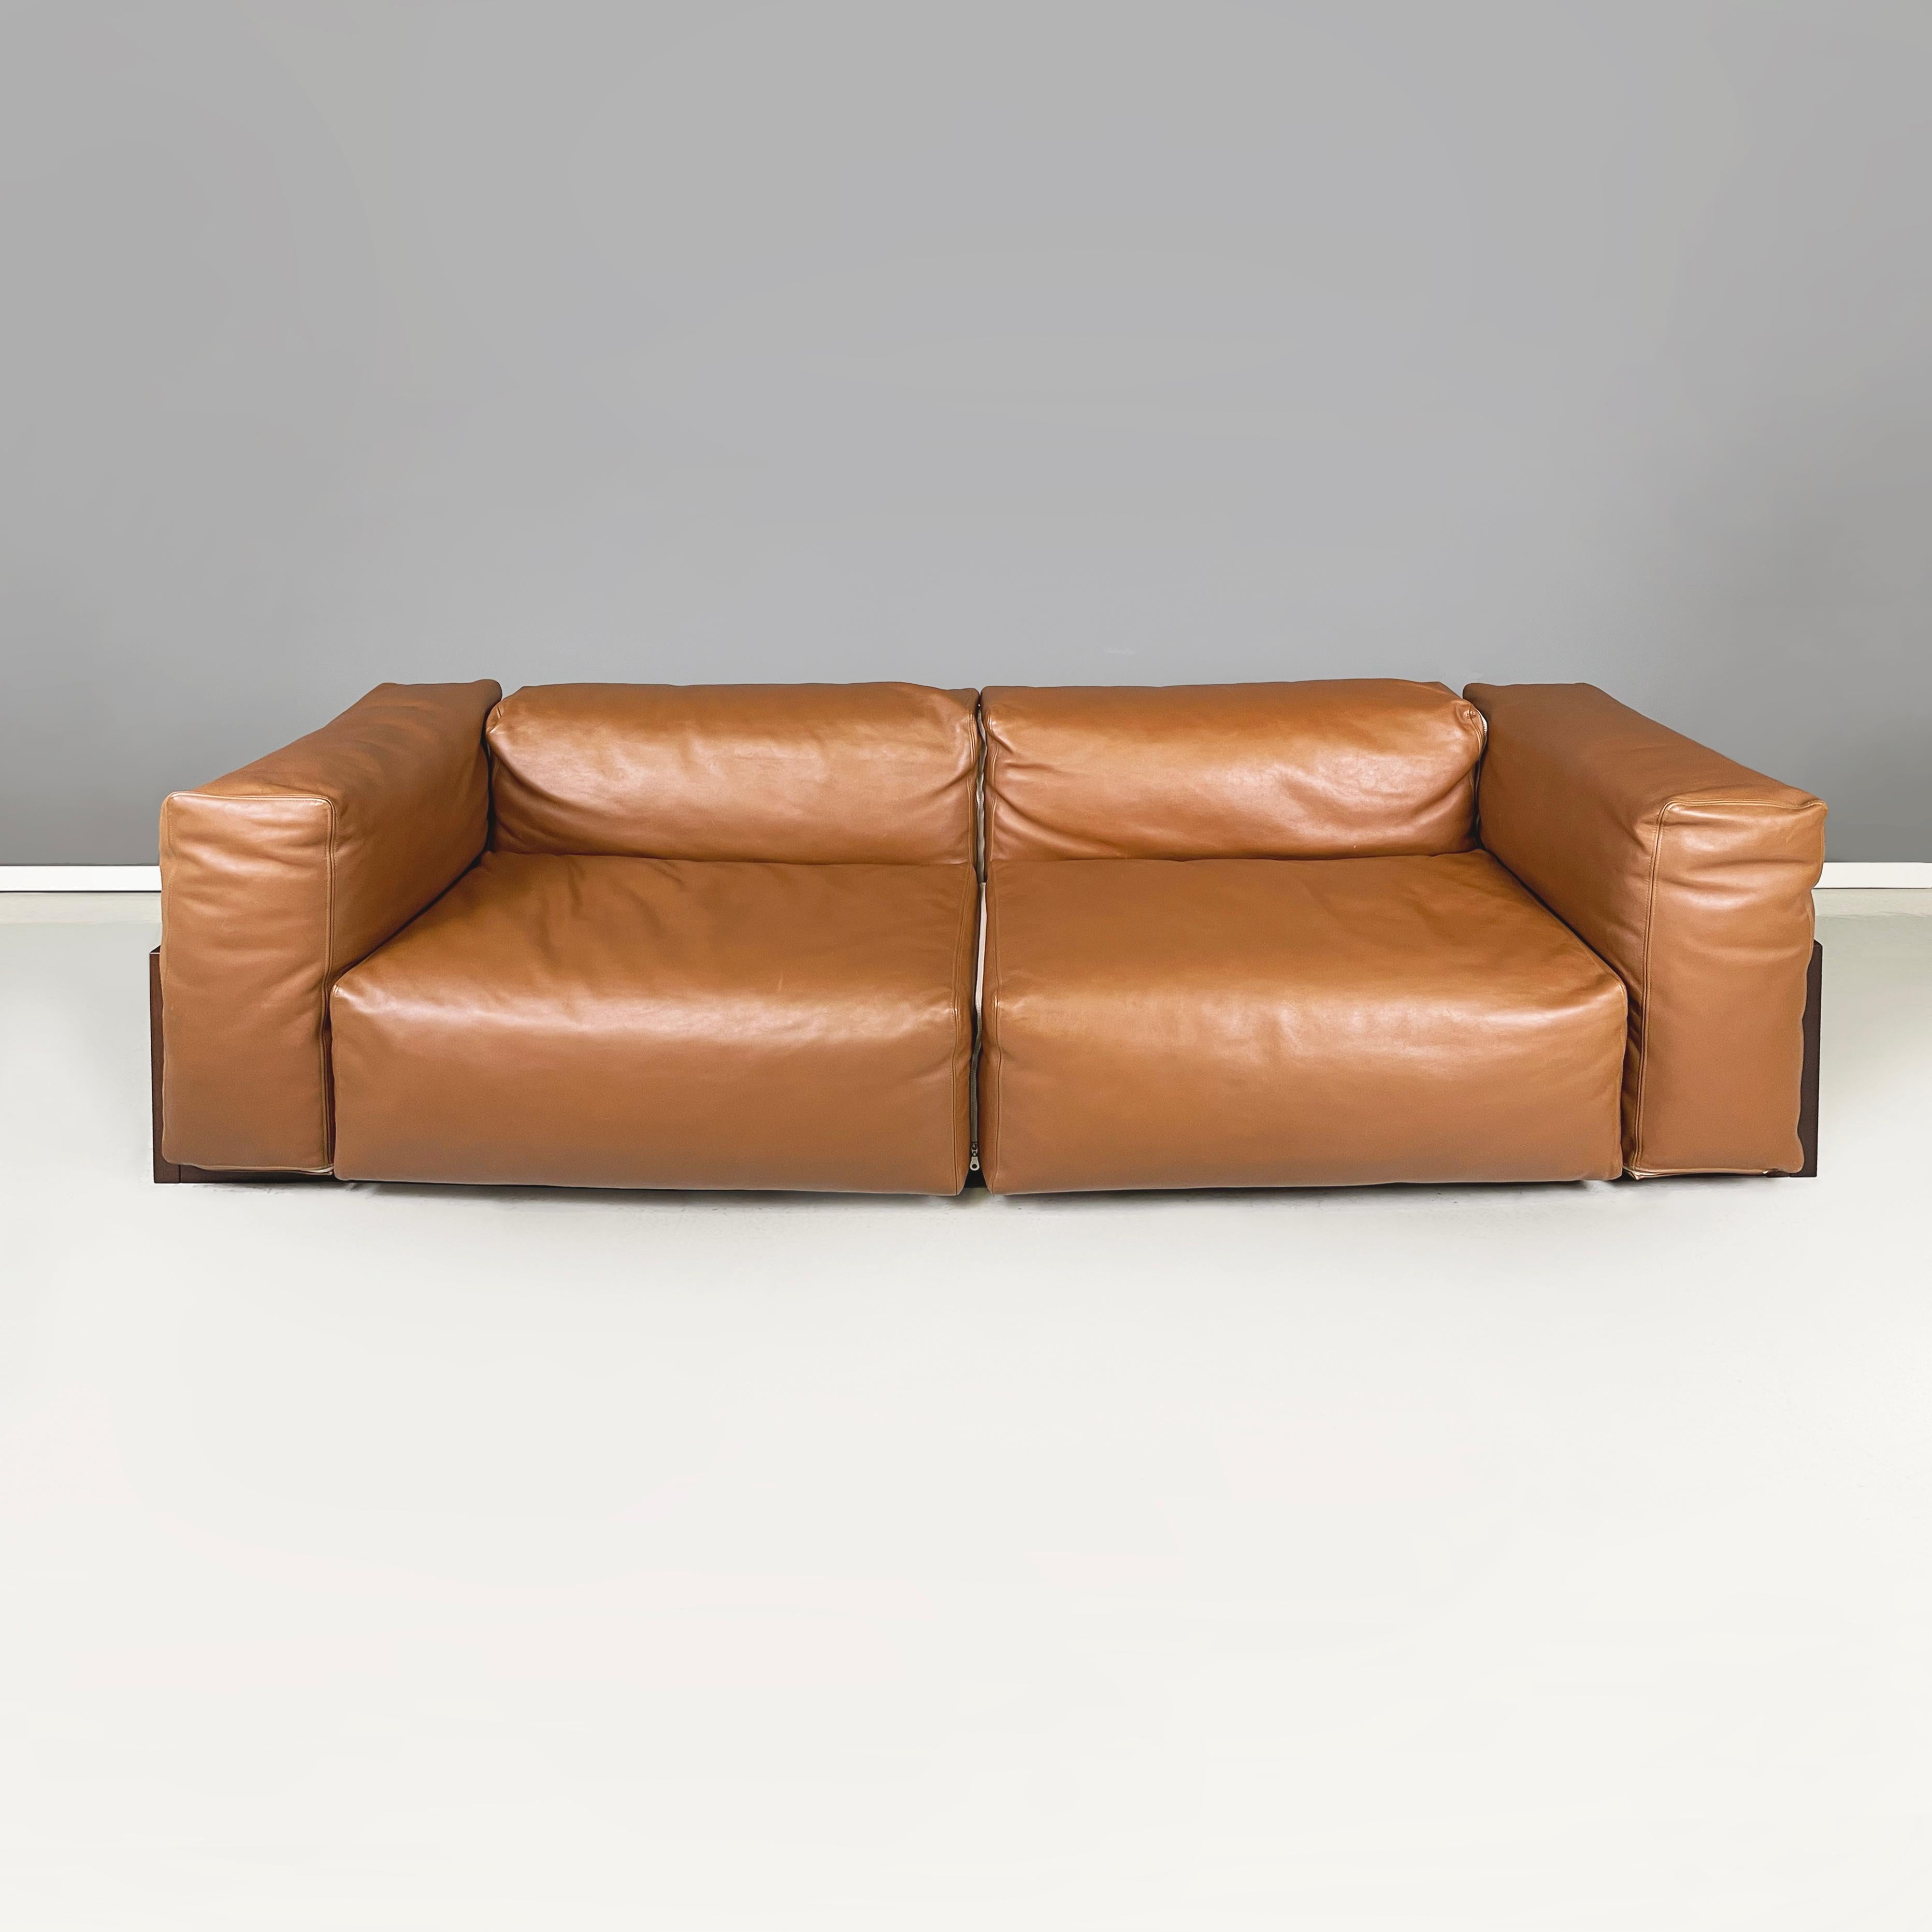 Italienisches postmodernes Sofa aus braunem Leder und dunklem Holz von Cappellini, 2000er Jahre
Zweisitziges Sofa aus braunem Leder. Die quadratischen Sitz-, Rücken- und Armlehnenkissen sind mit einem Reißverschluss verbunden. Die äußere Struktur